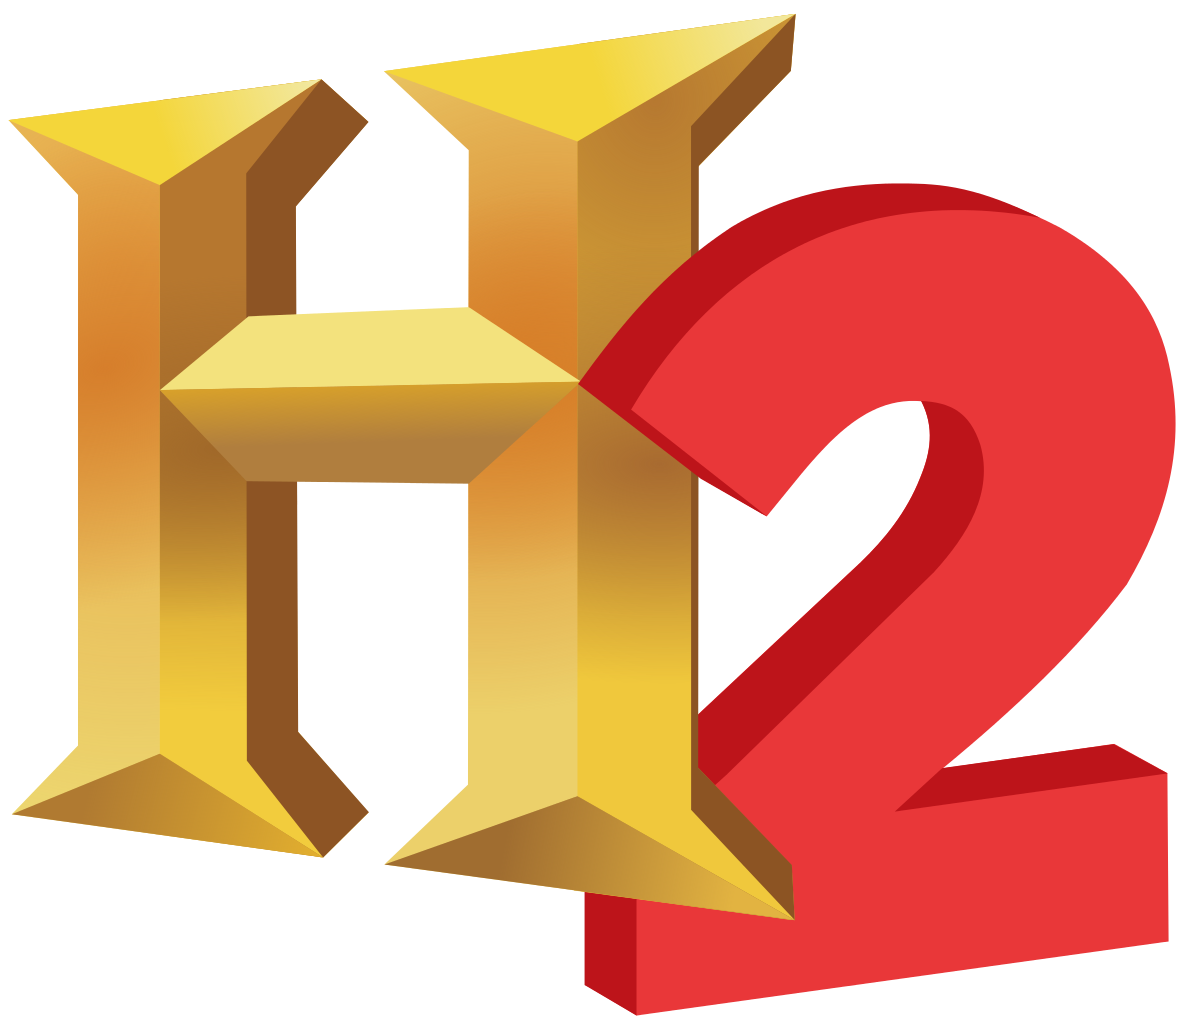 H2-logo.png